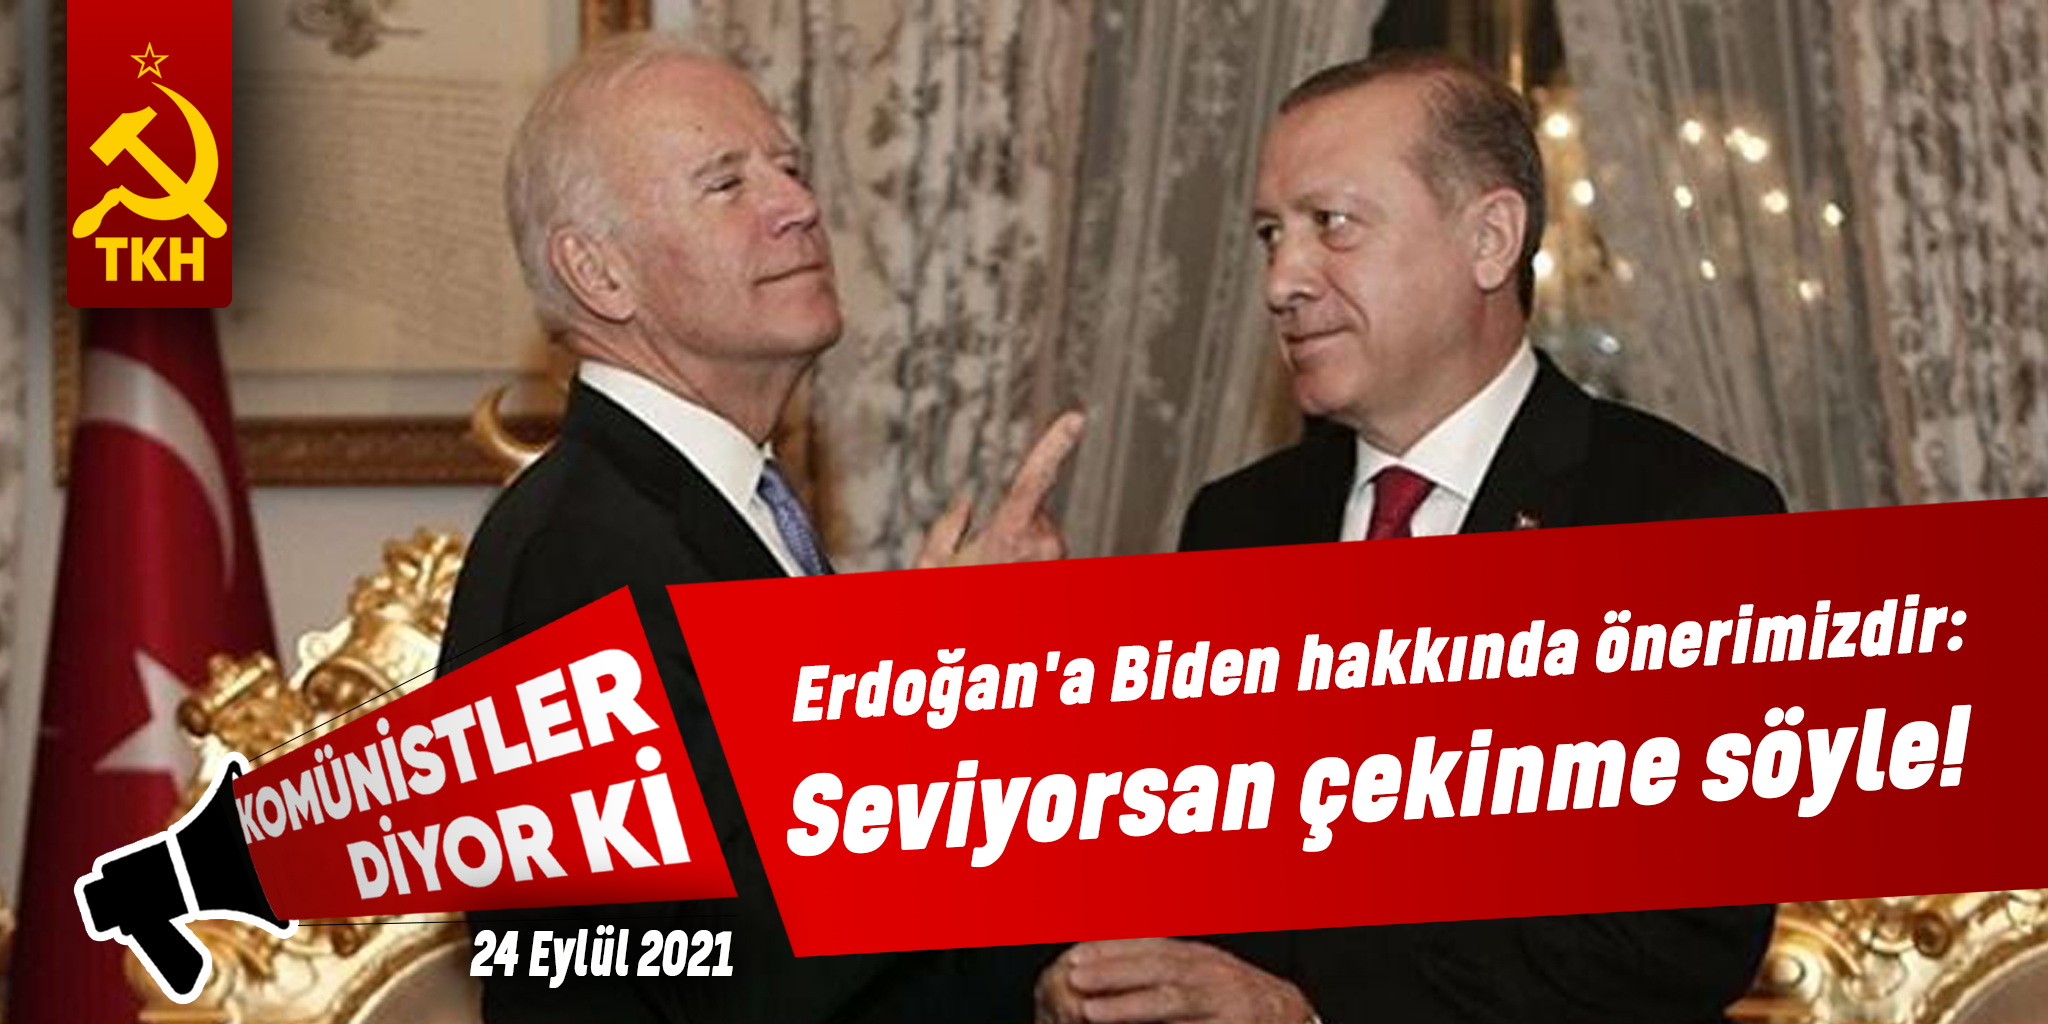 Erdoğan`a Biden hakkında önerimizdir: Seviyorsan çekinme söyle!